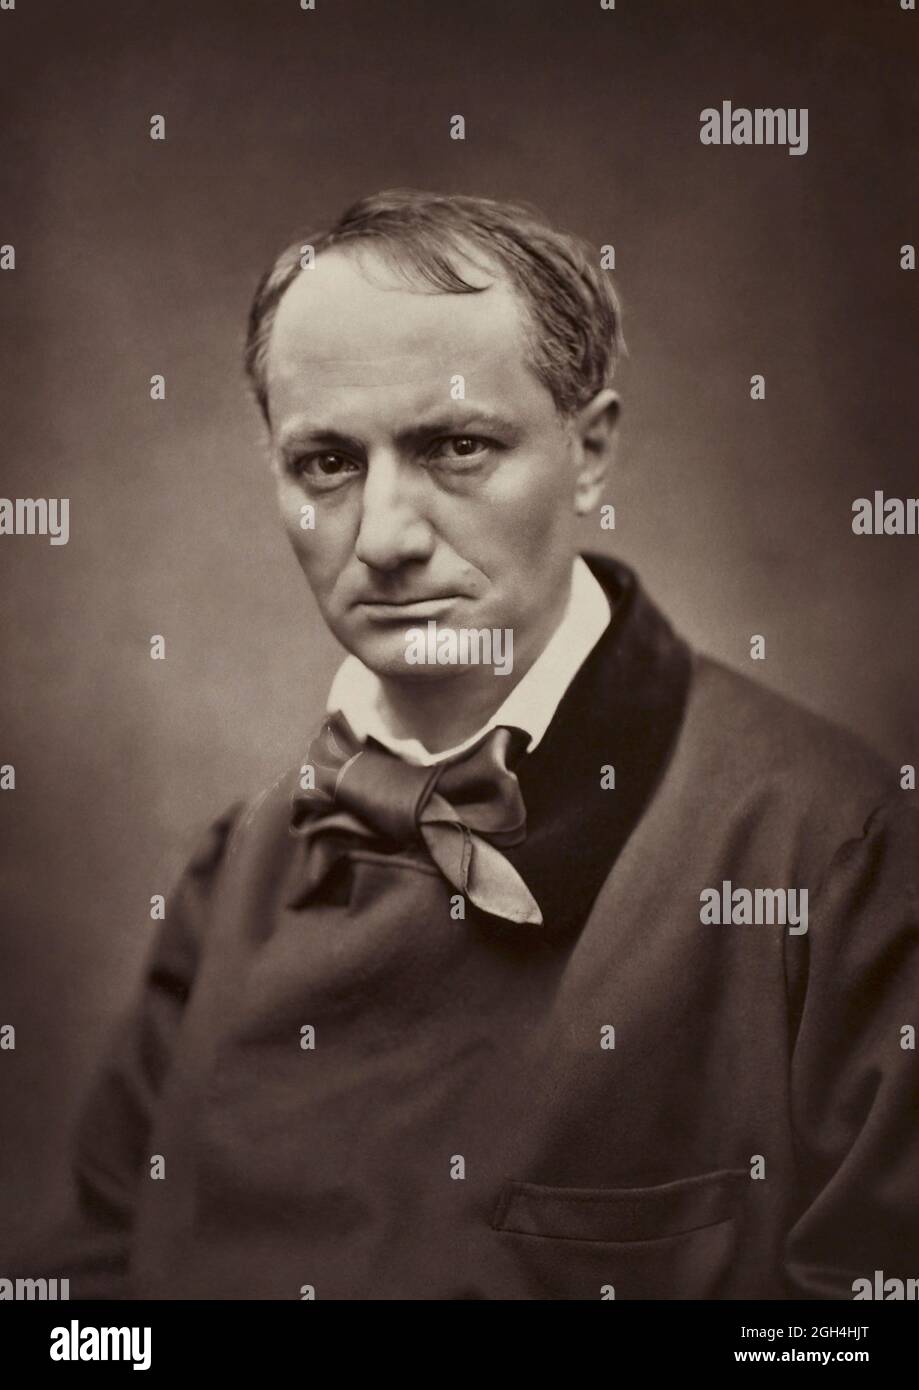 Portrait photographique vintage - Charles Baudelaire - Etienne Carjat photographie. Banque D'Images